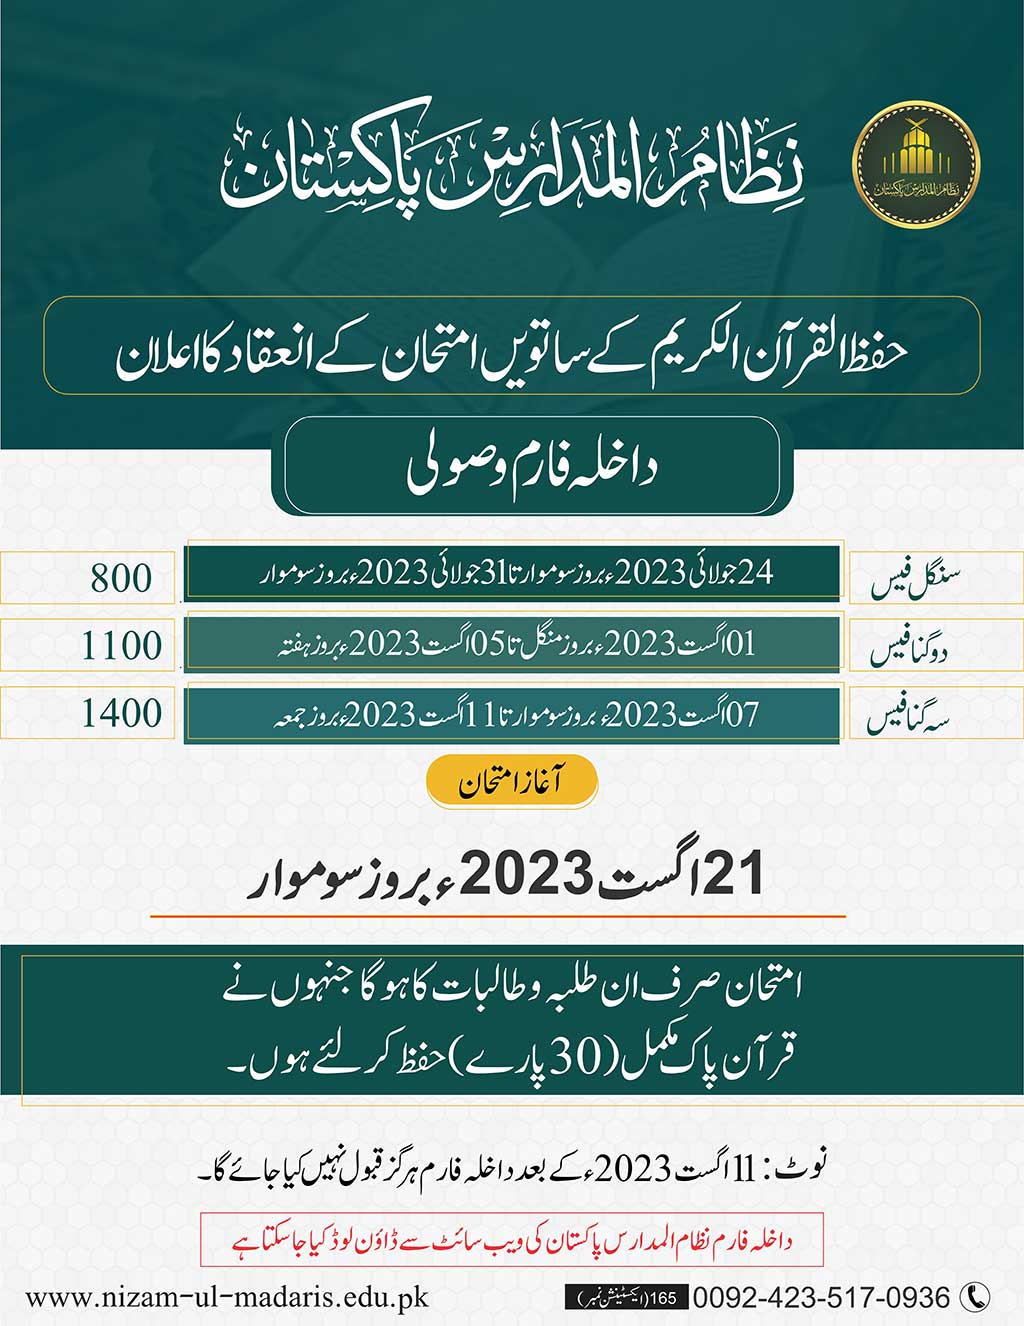 Hifaz-ul-quran-exam-under-nizam-ul-madris